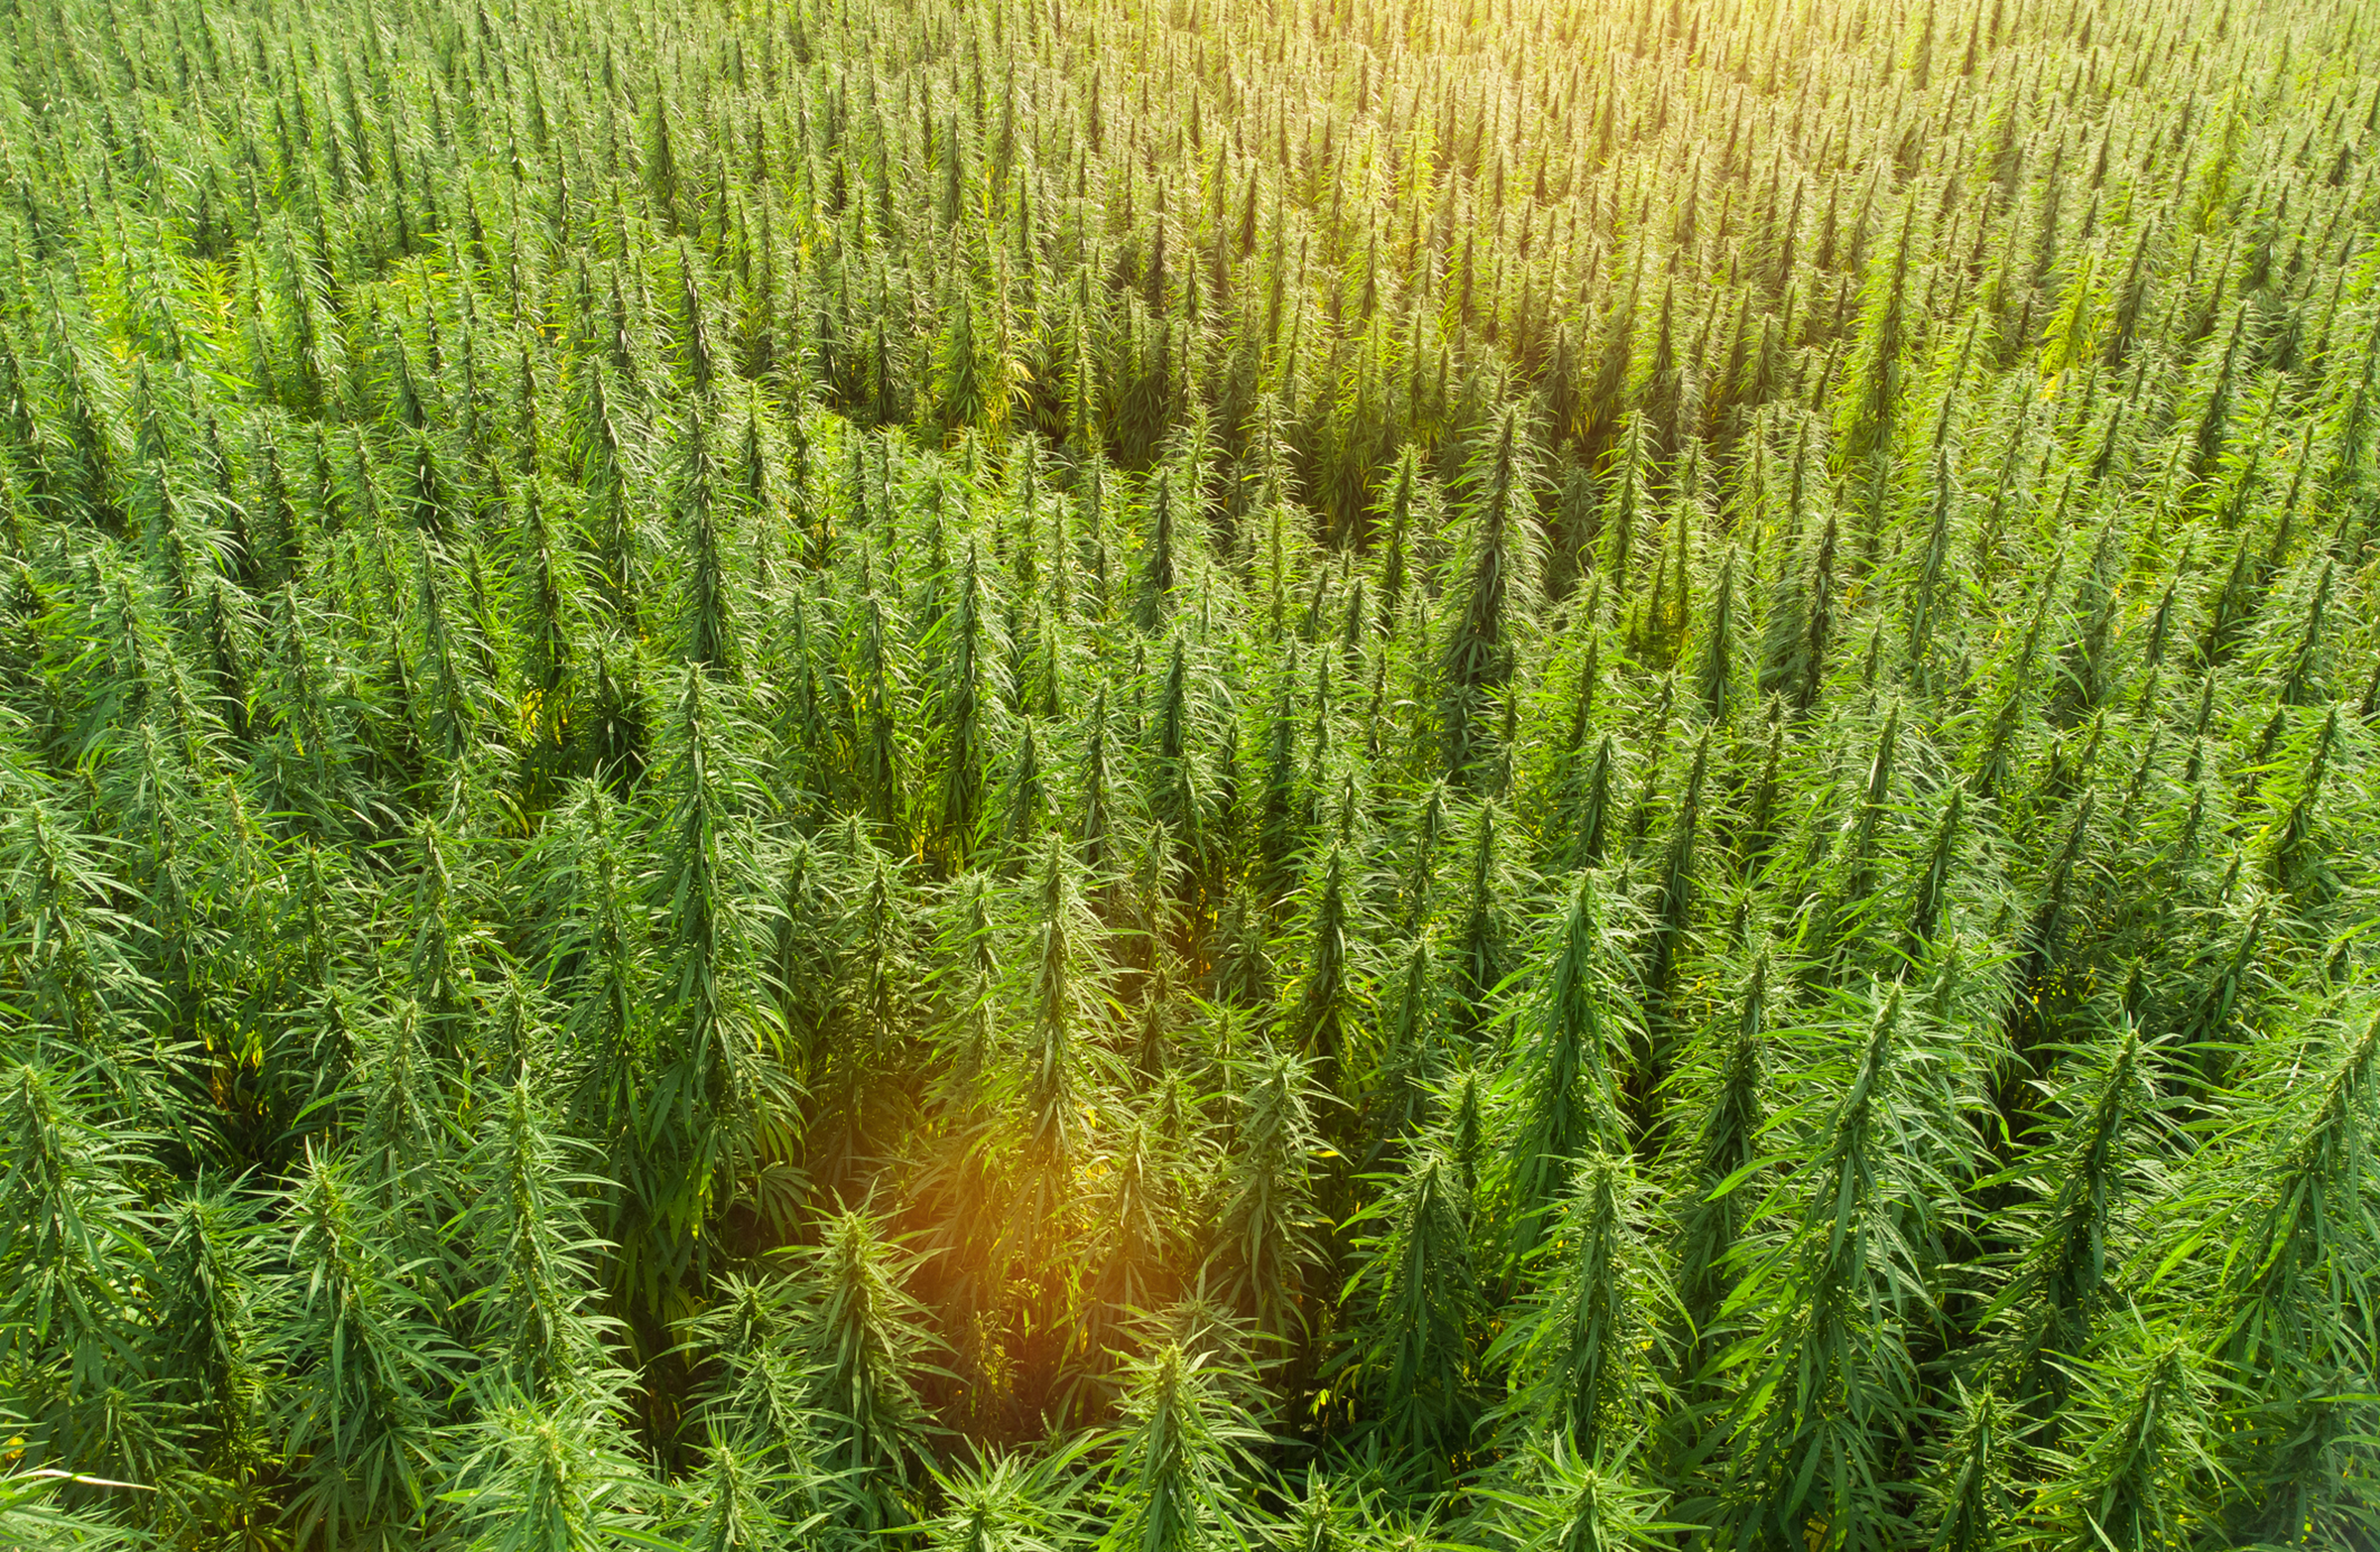 An outdoor cannabis field